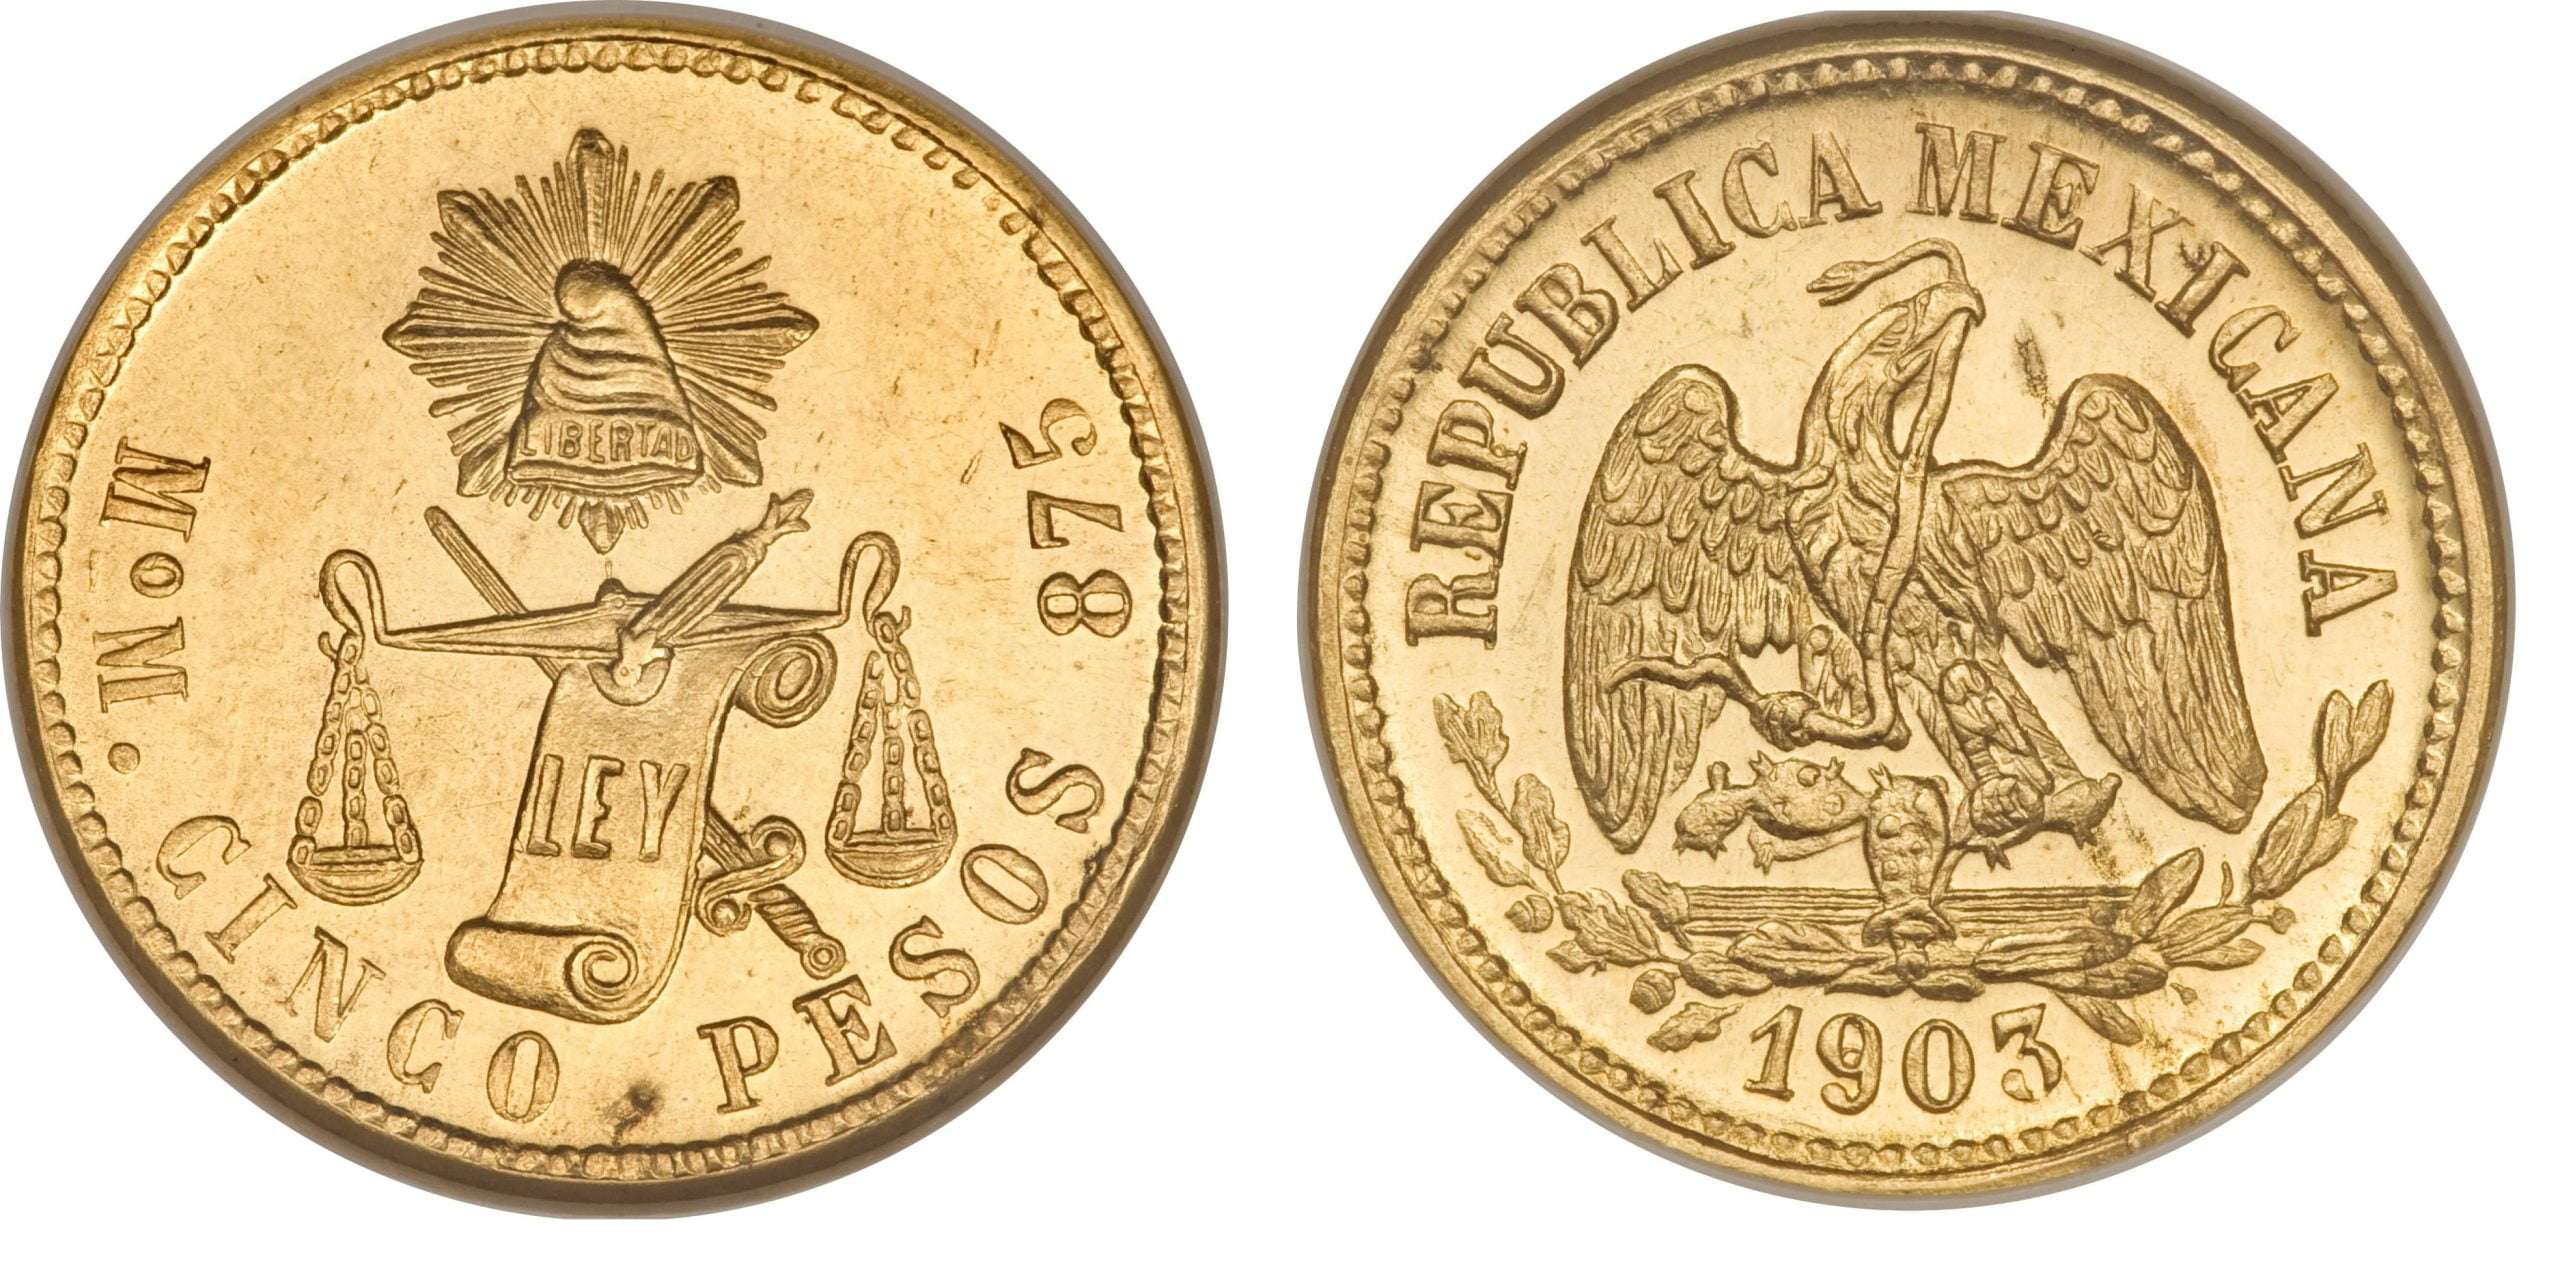 5 Χρυσά Πέσος ”1870-1905”